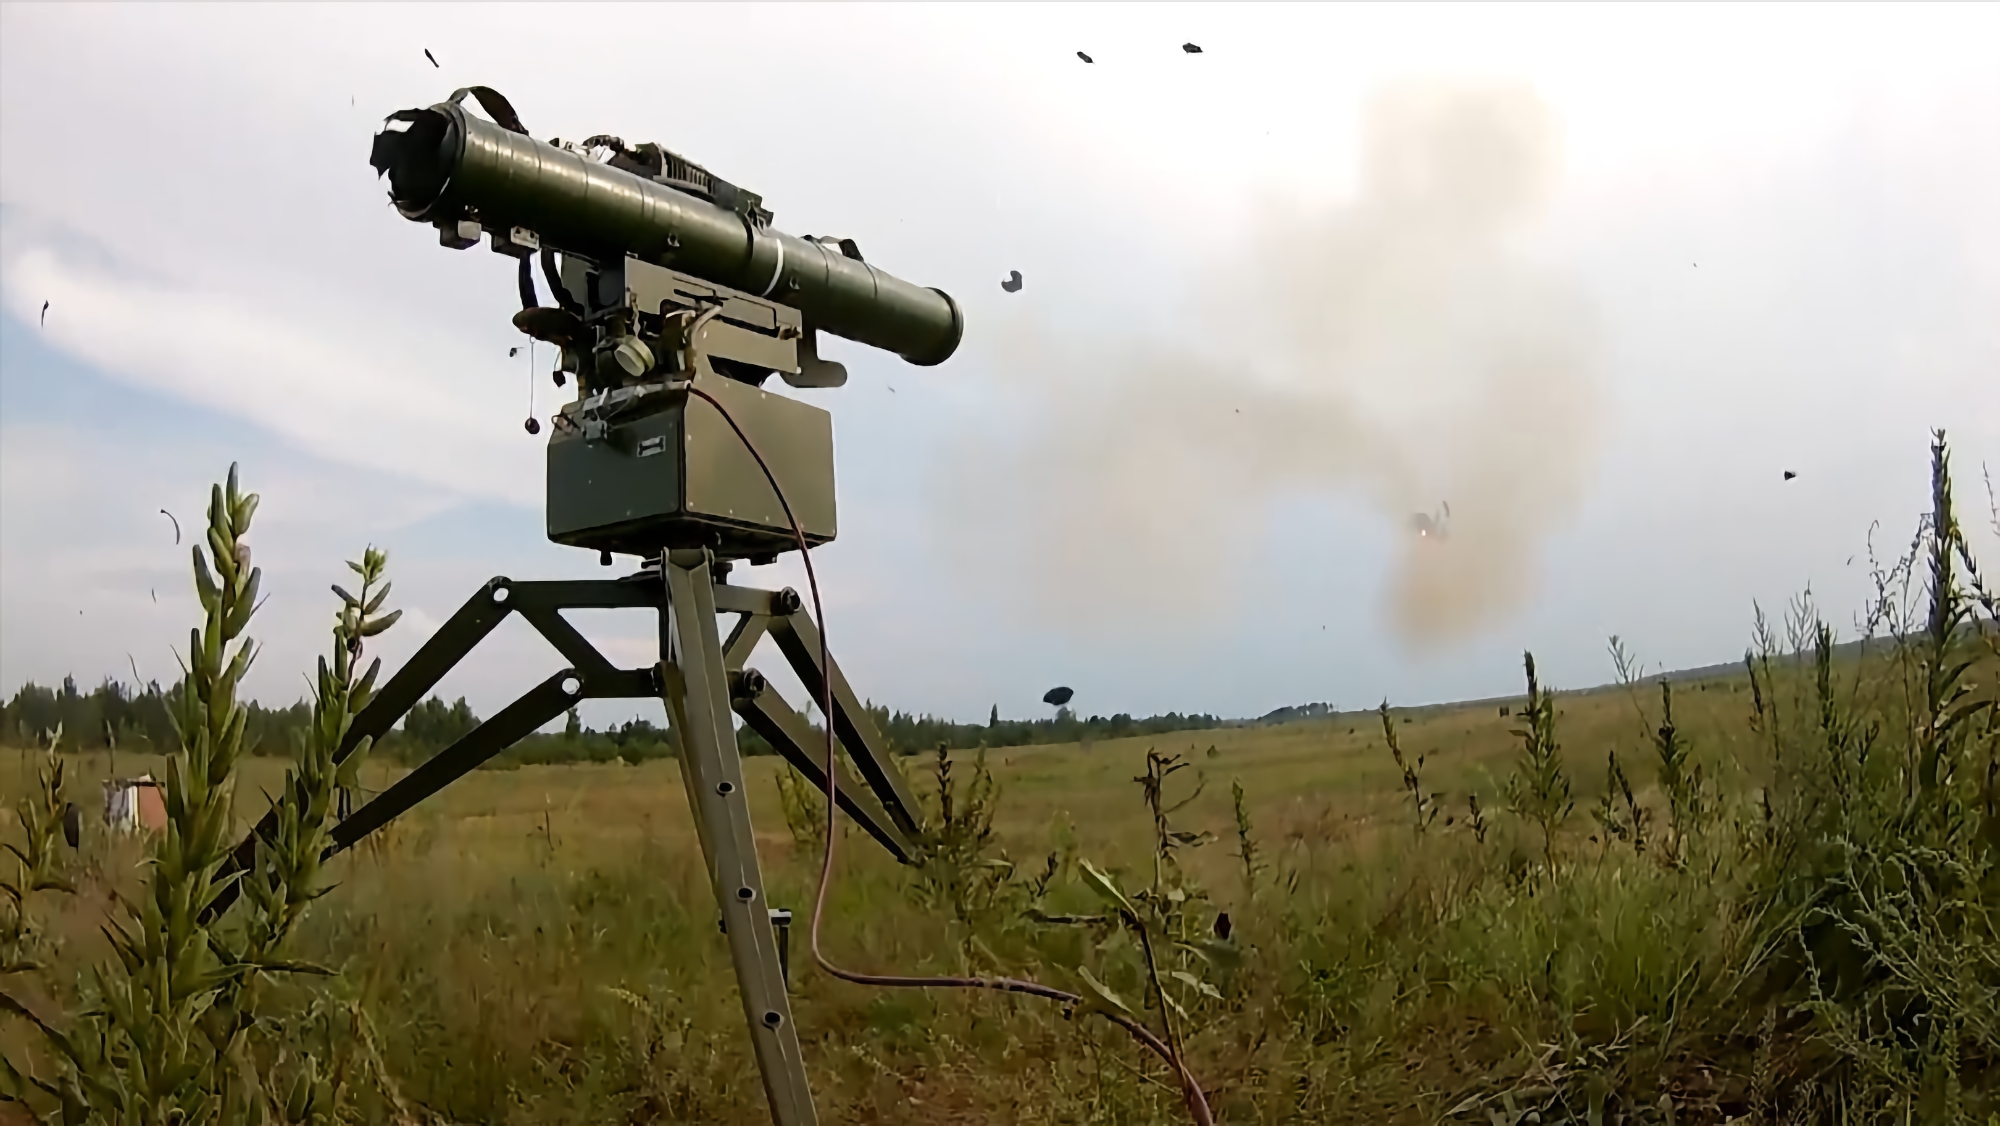 Le forze armate dell'Ucraina con l'aiuto dell'ATGM "Stugna-P" hanno distrutto il "Buk" russo (video)